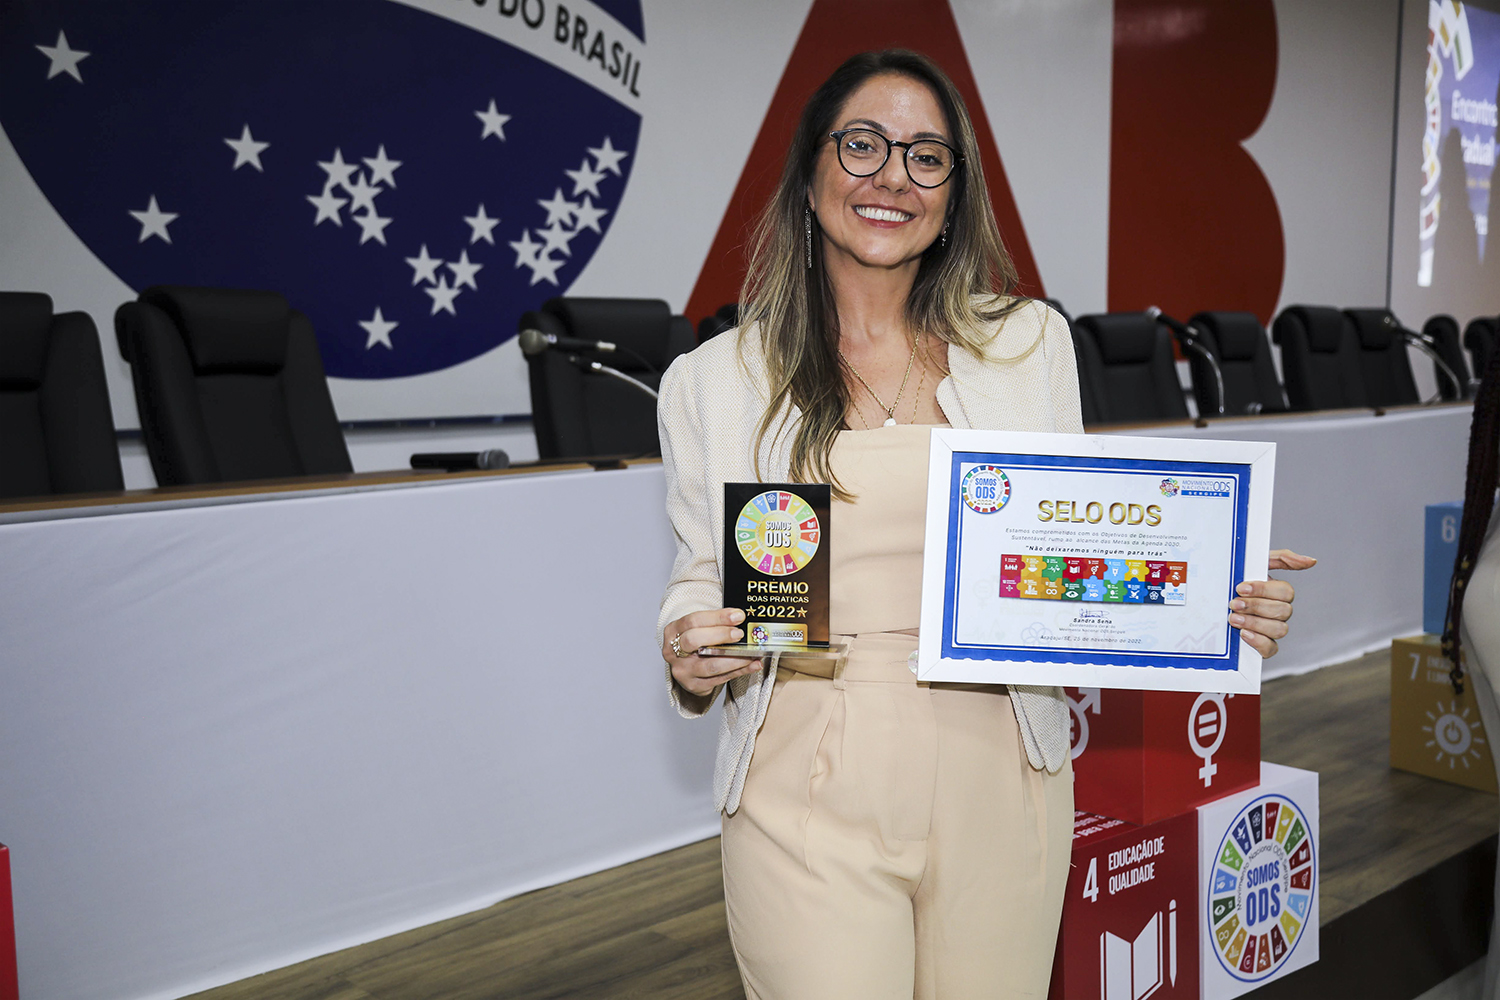 Karyna Sposato, coordenadora dos Observatórios Sociais da UFS, exibe quadro com Selo ODS e troféu do Prêmio boas práticas ODS 2022